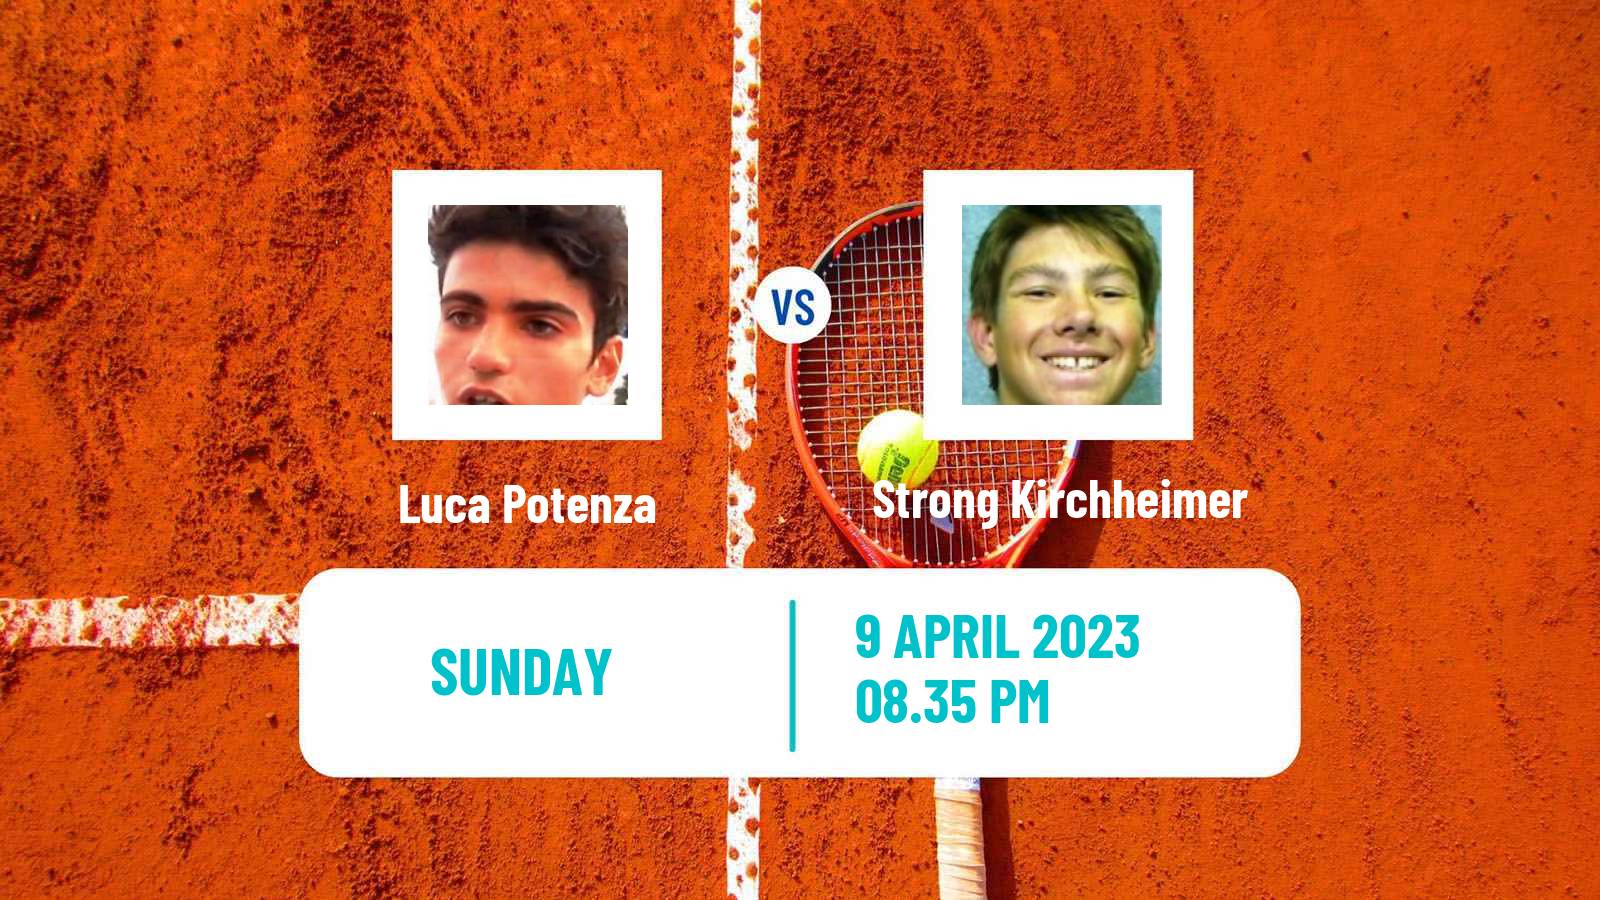 Tennis ATP Challenger Luca Potenza - Strong Kirchheimer